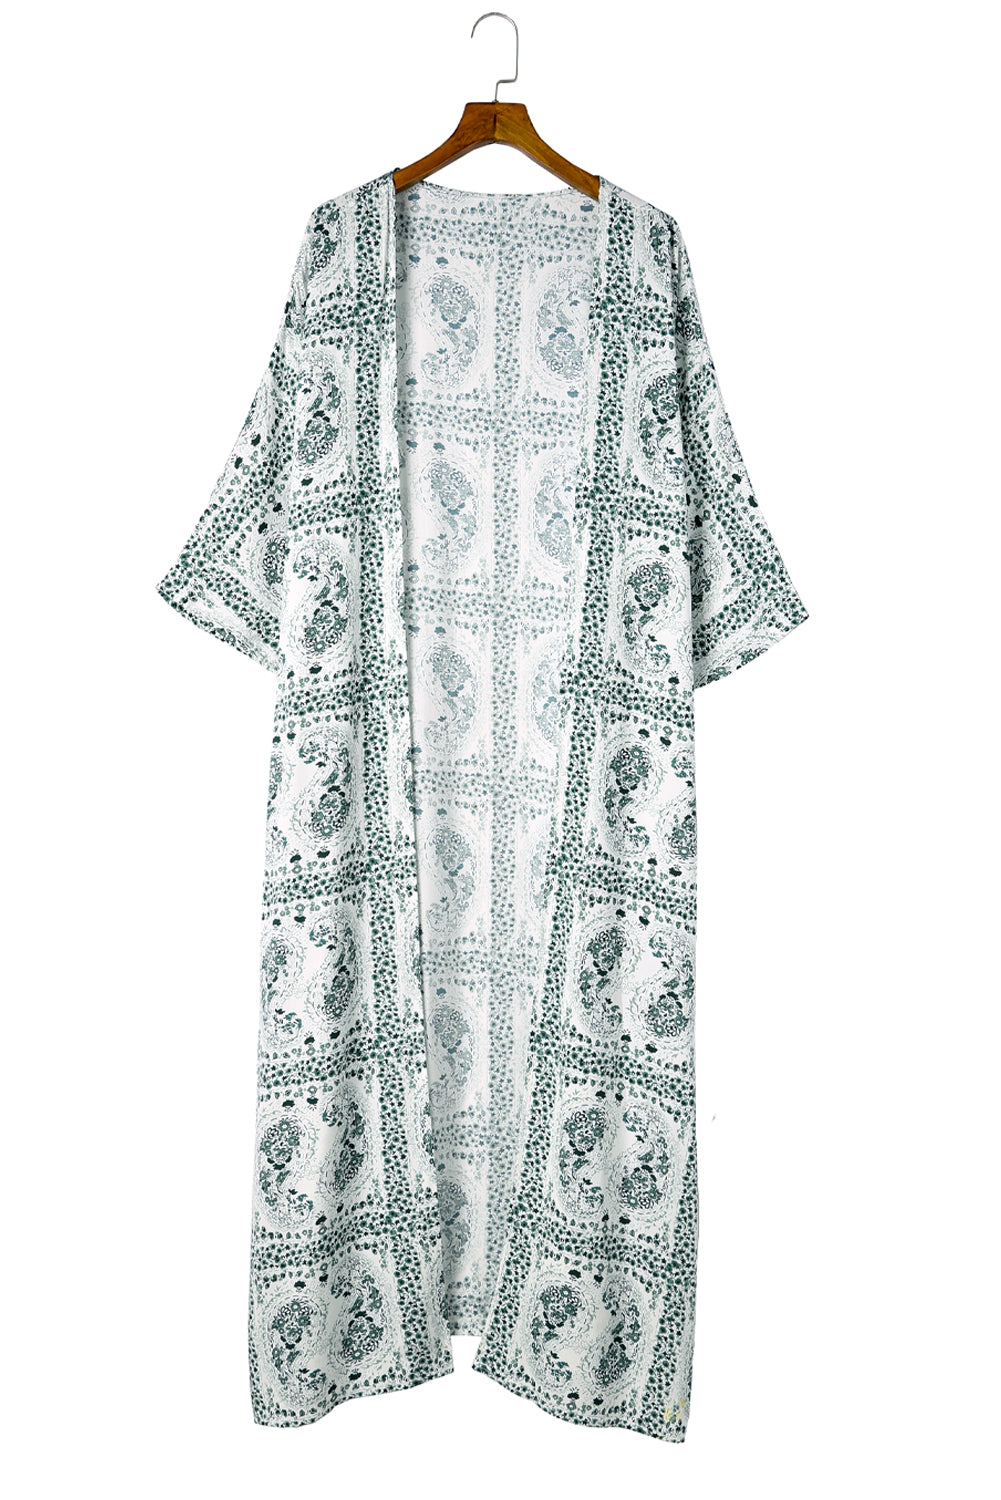 Green Dolman Sleeves Printed Kimono Kimonos JT's Designer Fashion